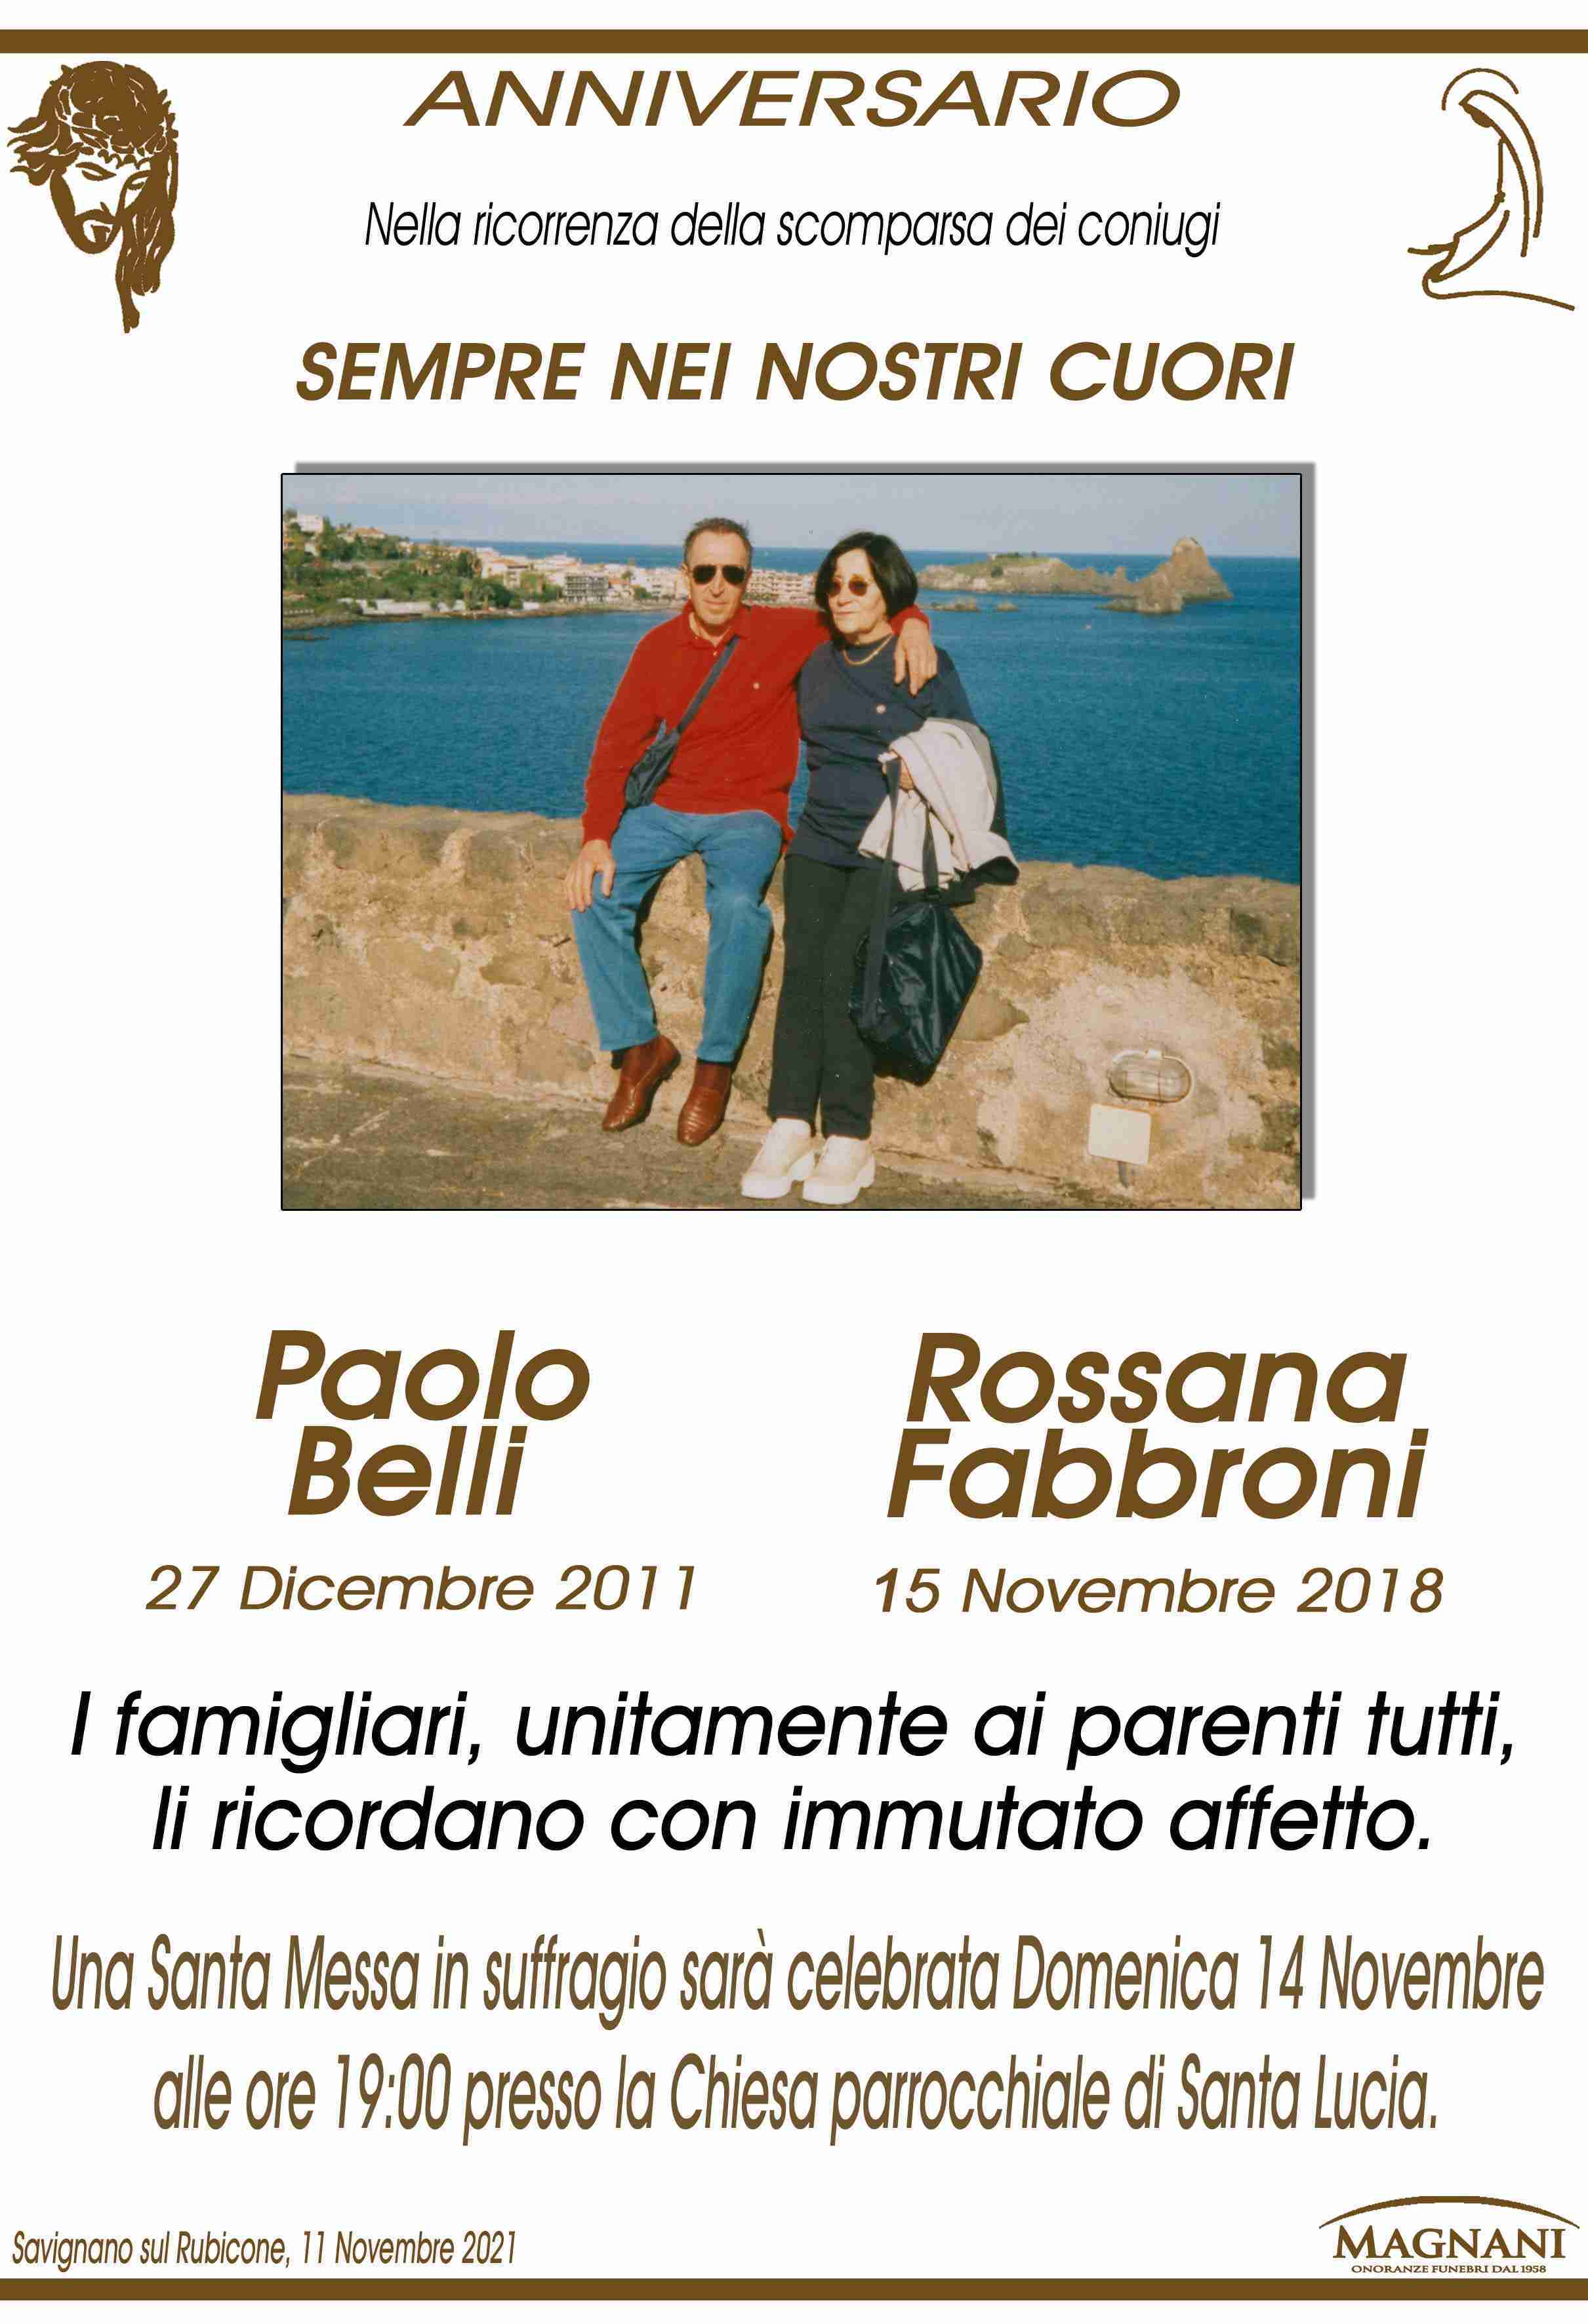 Paolo Belli e Rossana Fabbroni